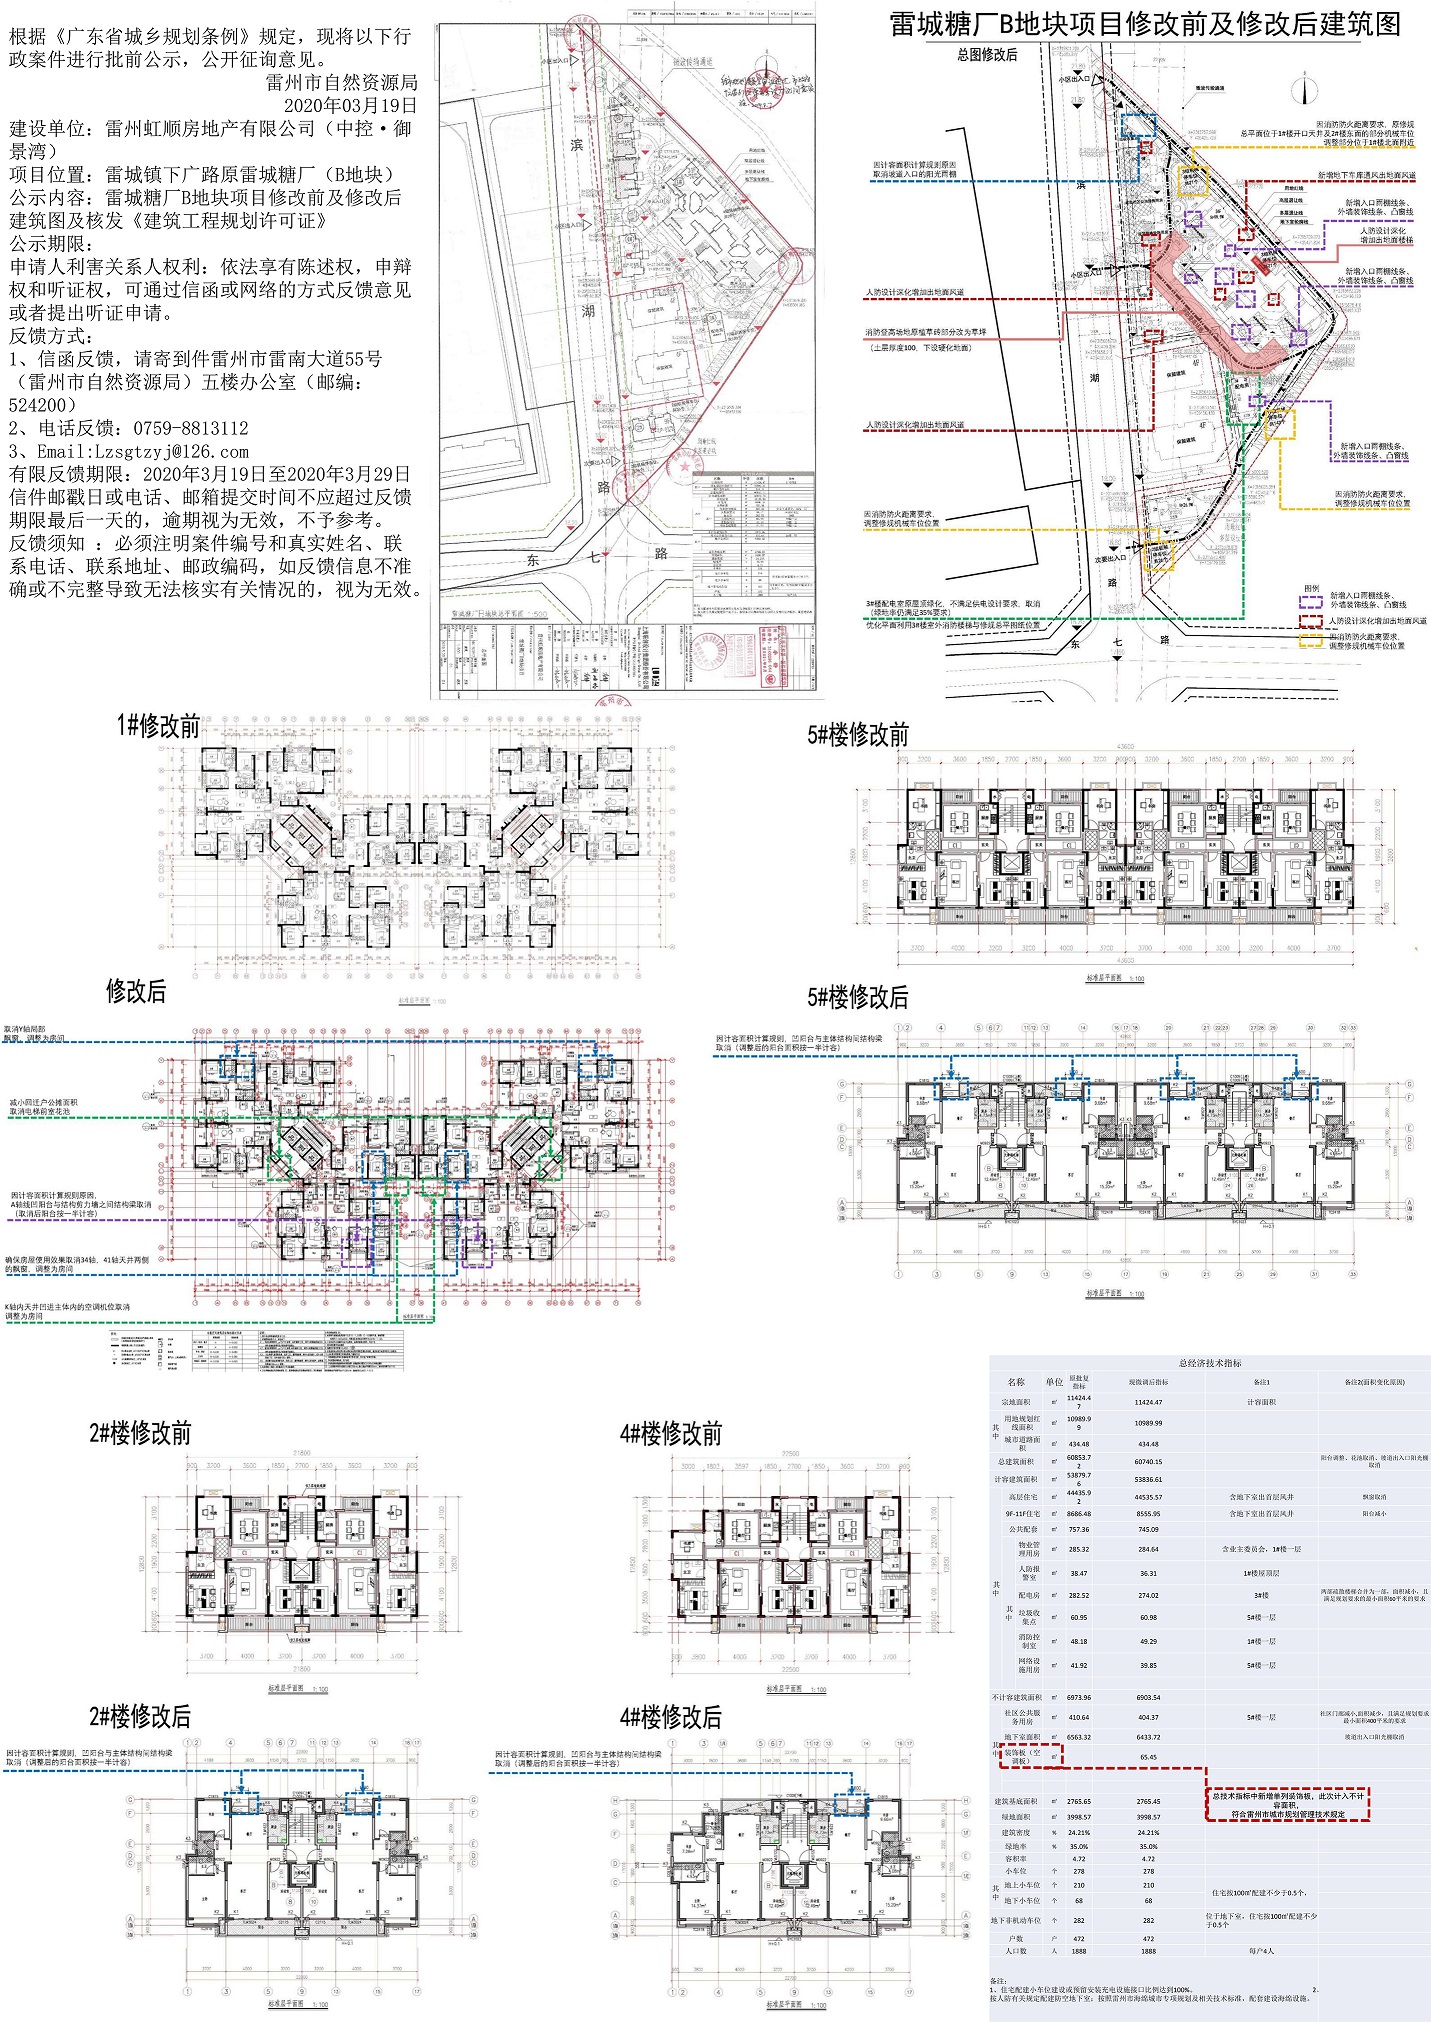 关于雷城糖厂B地块项目修改前及修改后建筑图公示.jpg